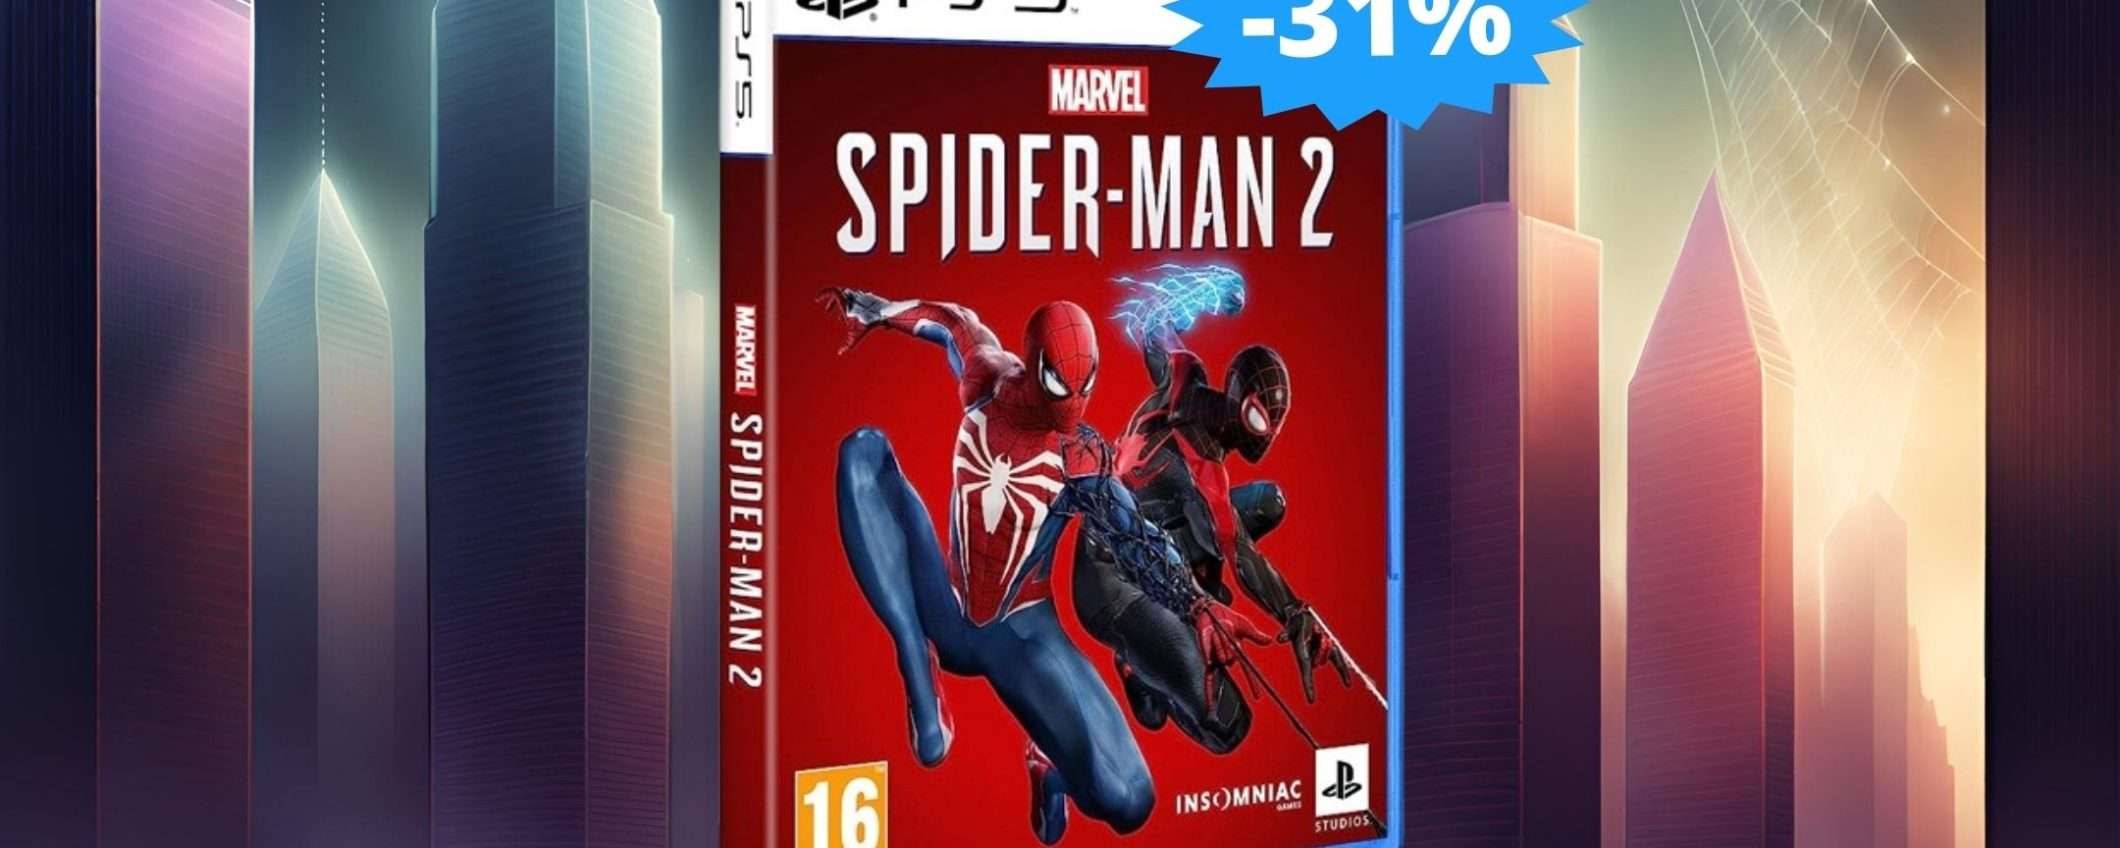 Spider-Man 2 per PS5: sconto ESCLUSIVO del 31% su Amazon